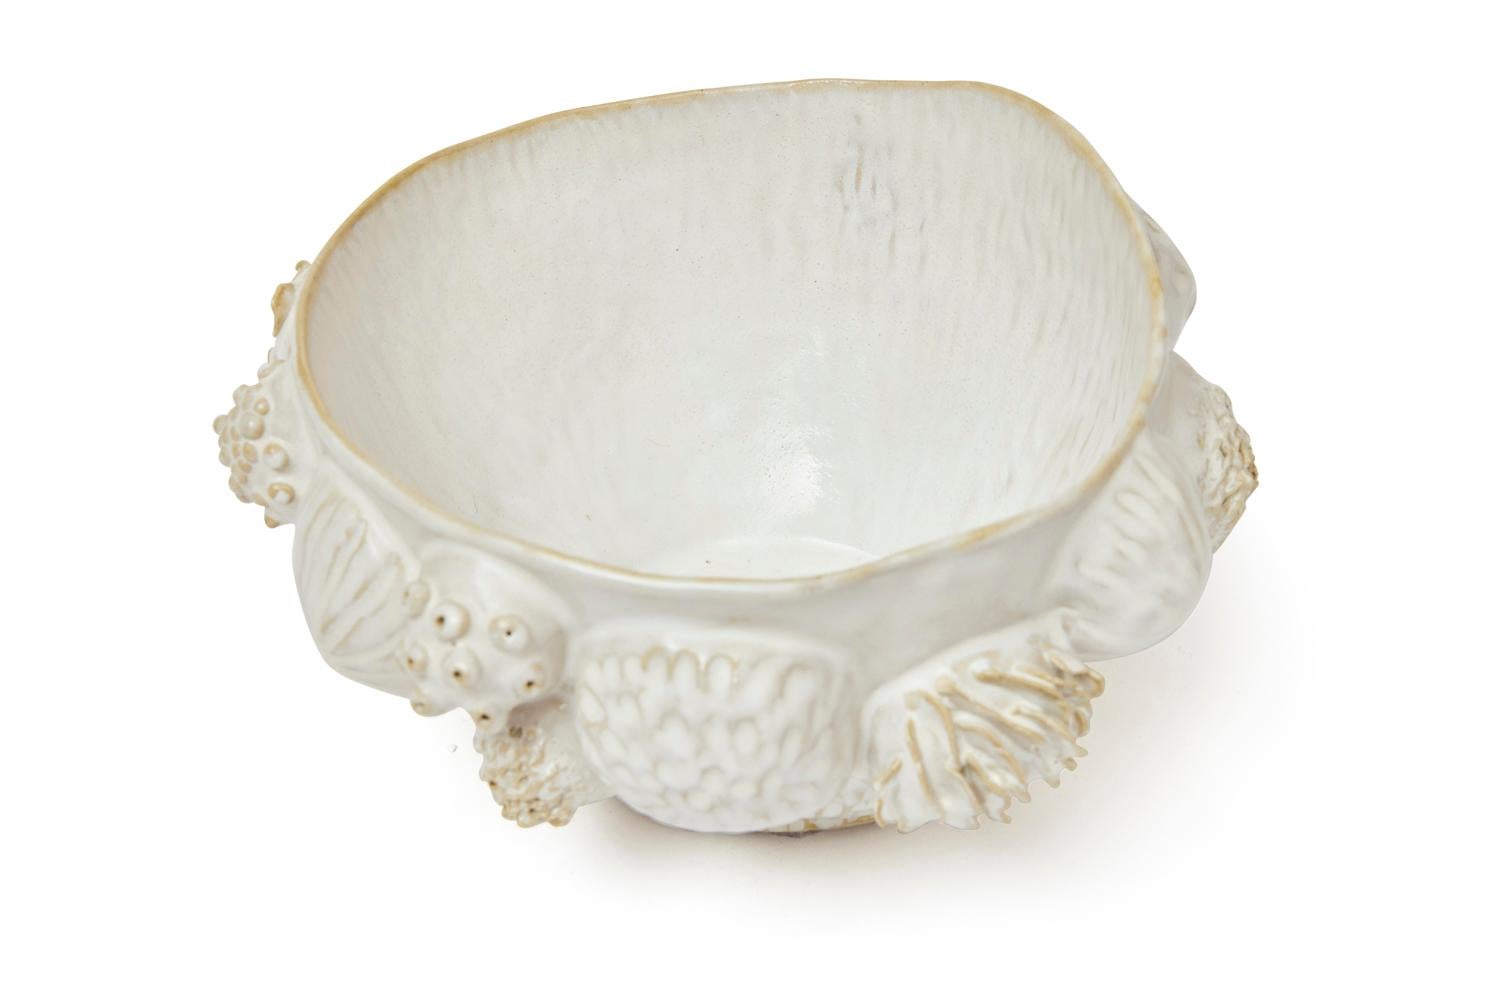 Botanica Bowl in Glazed Ceramic by Trish DeMasi In New Condition For Sale In Philadelphia, PA